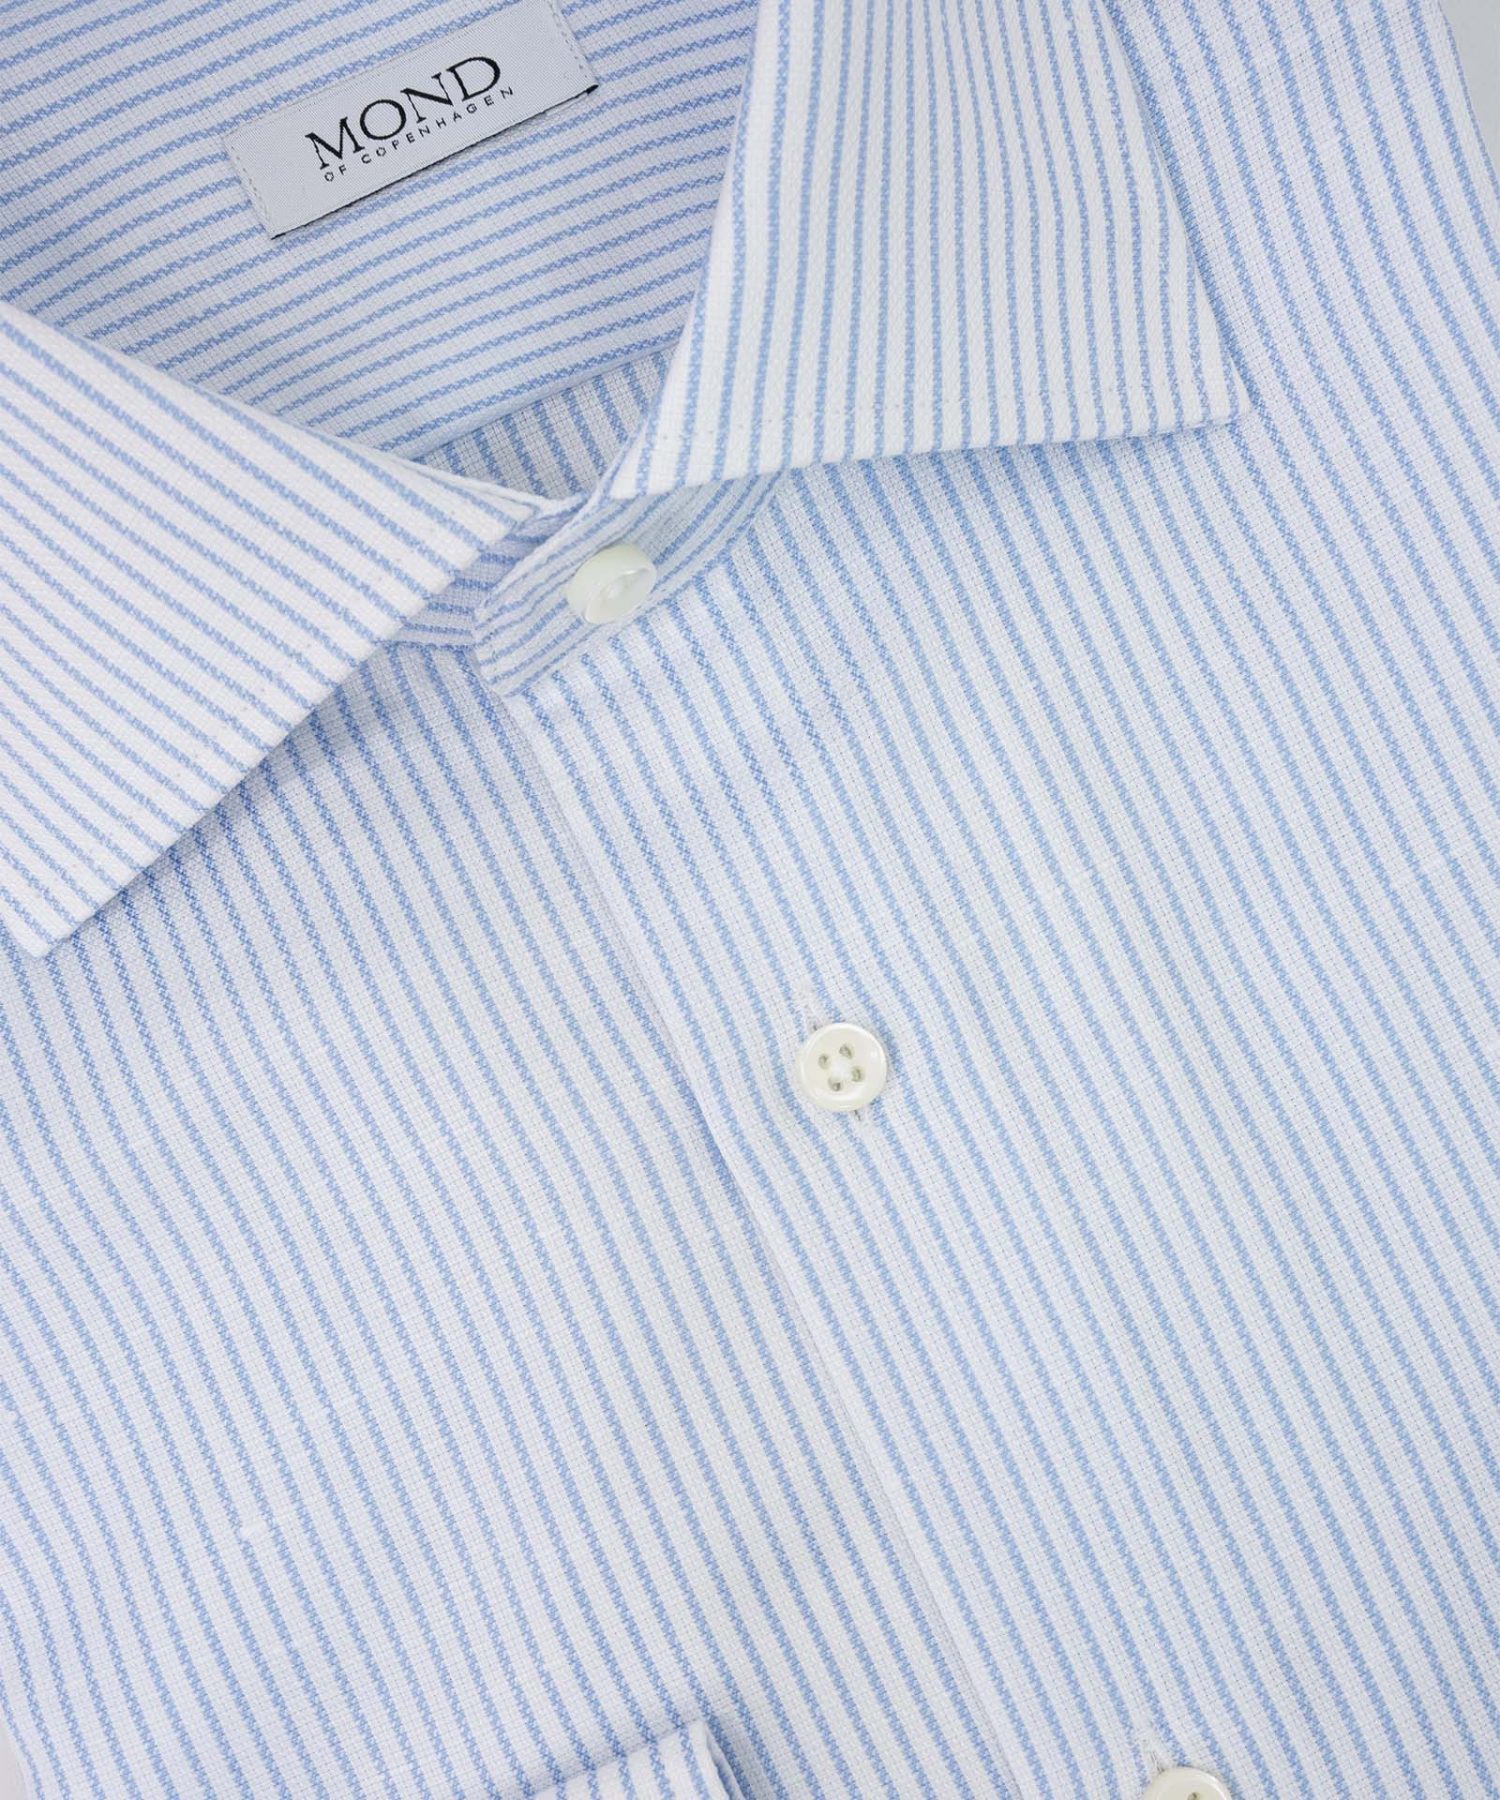 Light Blue Striped Cotton:Linen details